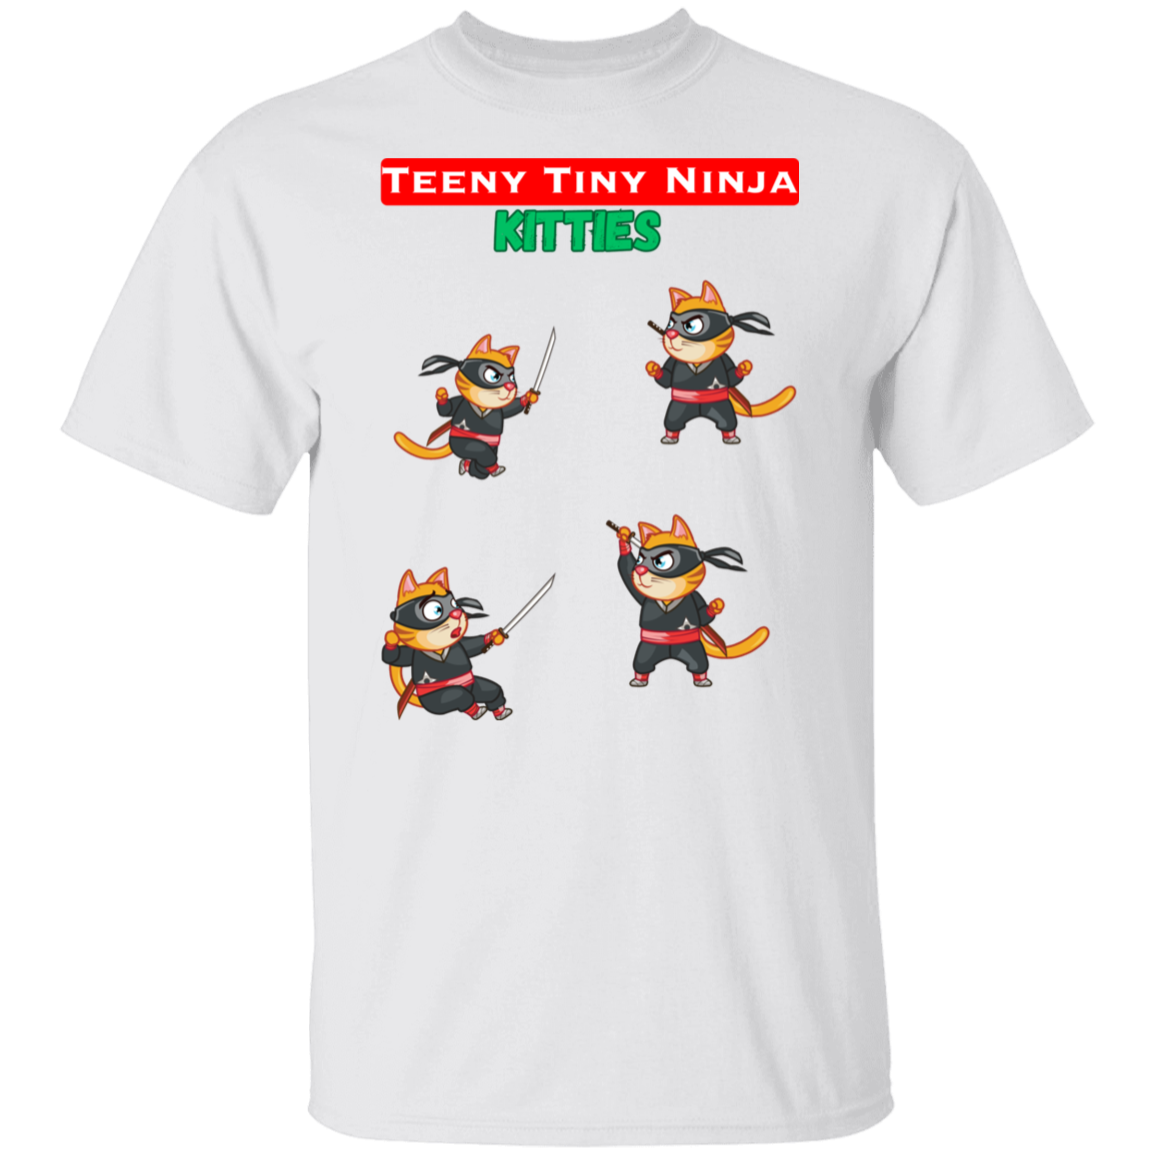 Teeny Tiny Ninja Kitties - Men's T-Shirt